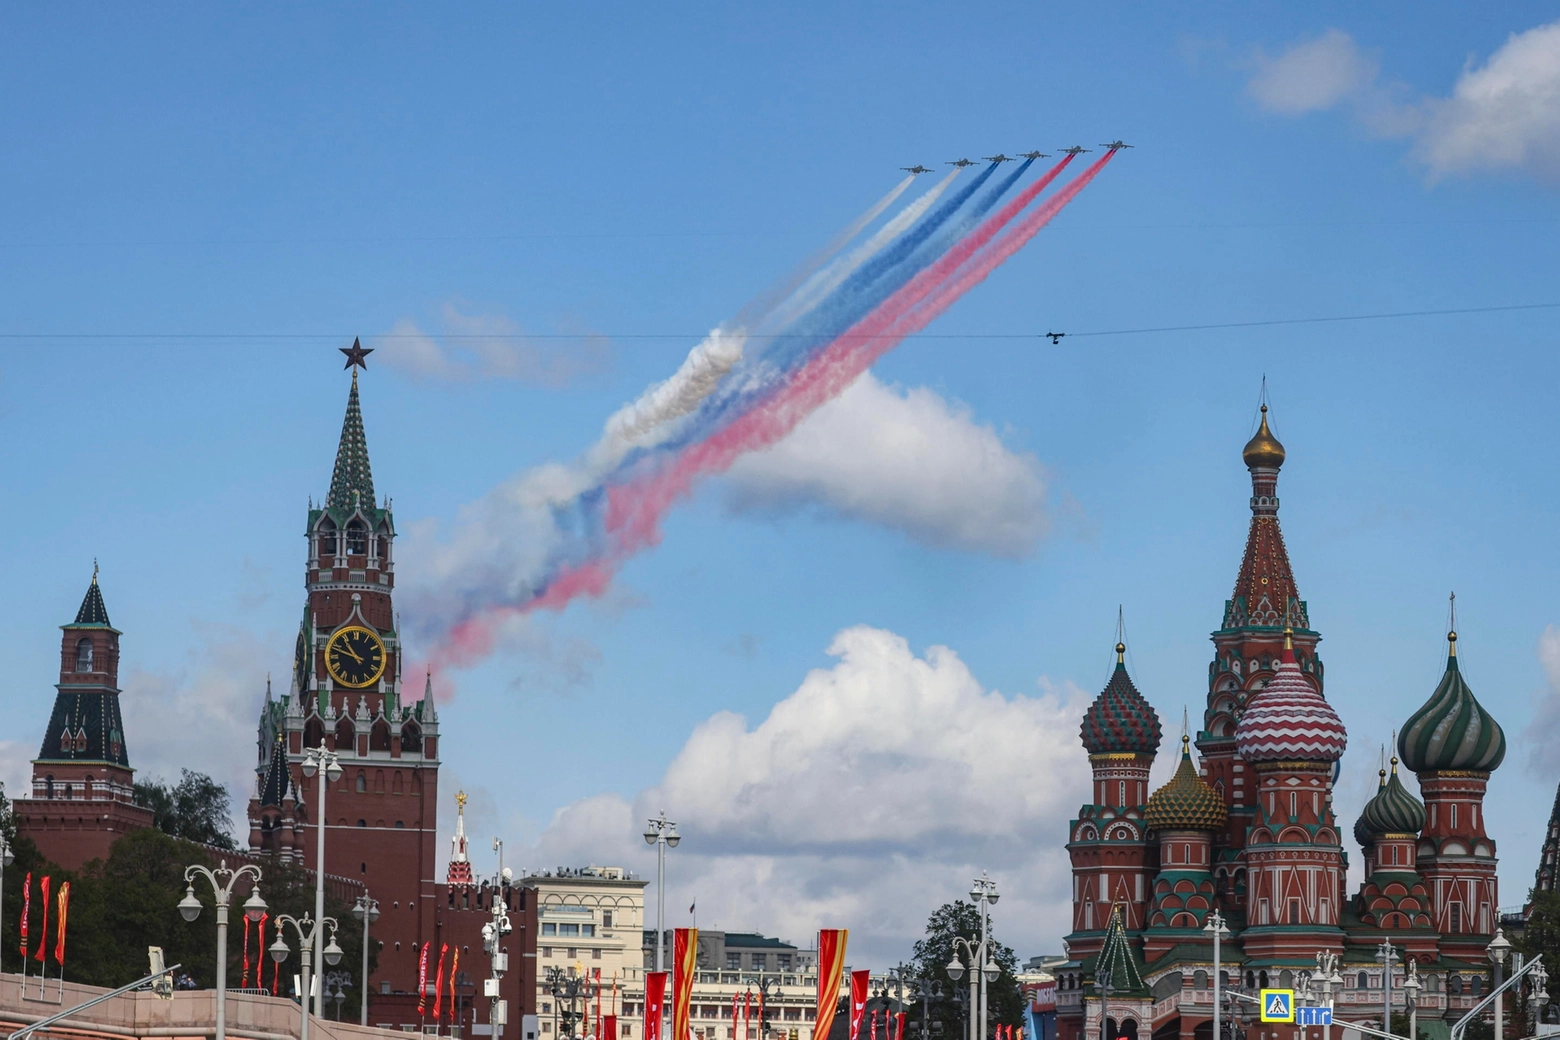 Le prove generali della parata nella piazza Rossa a Mosca